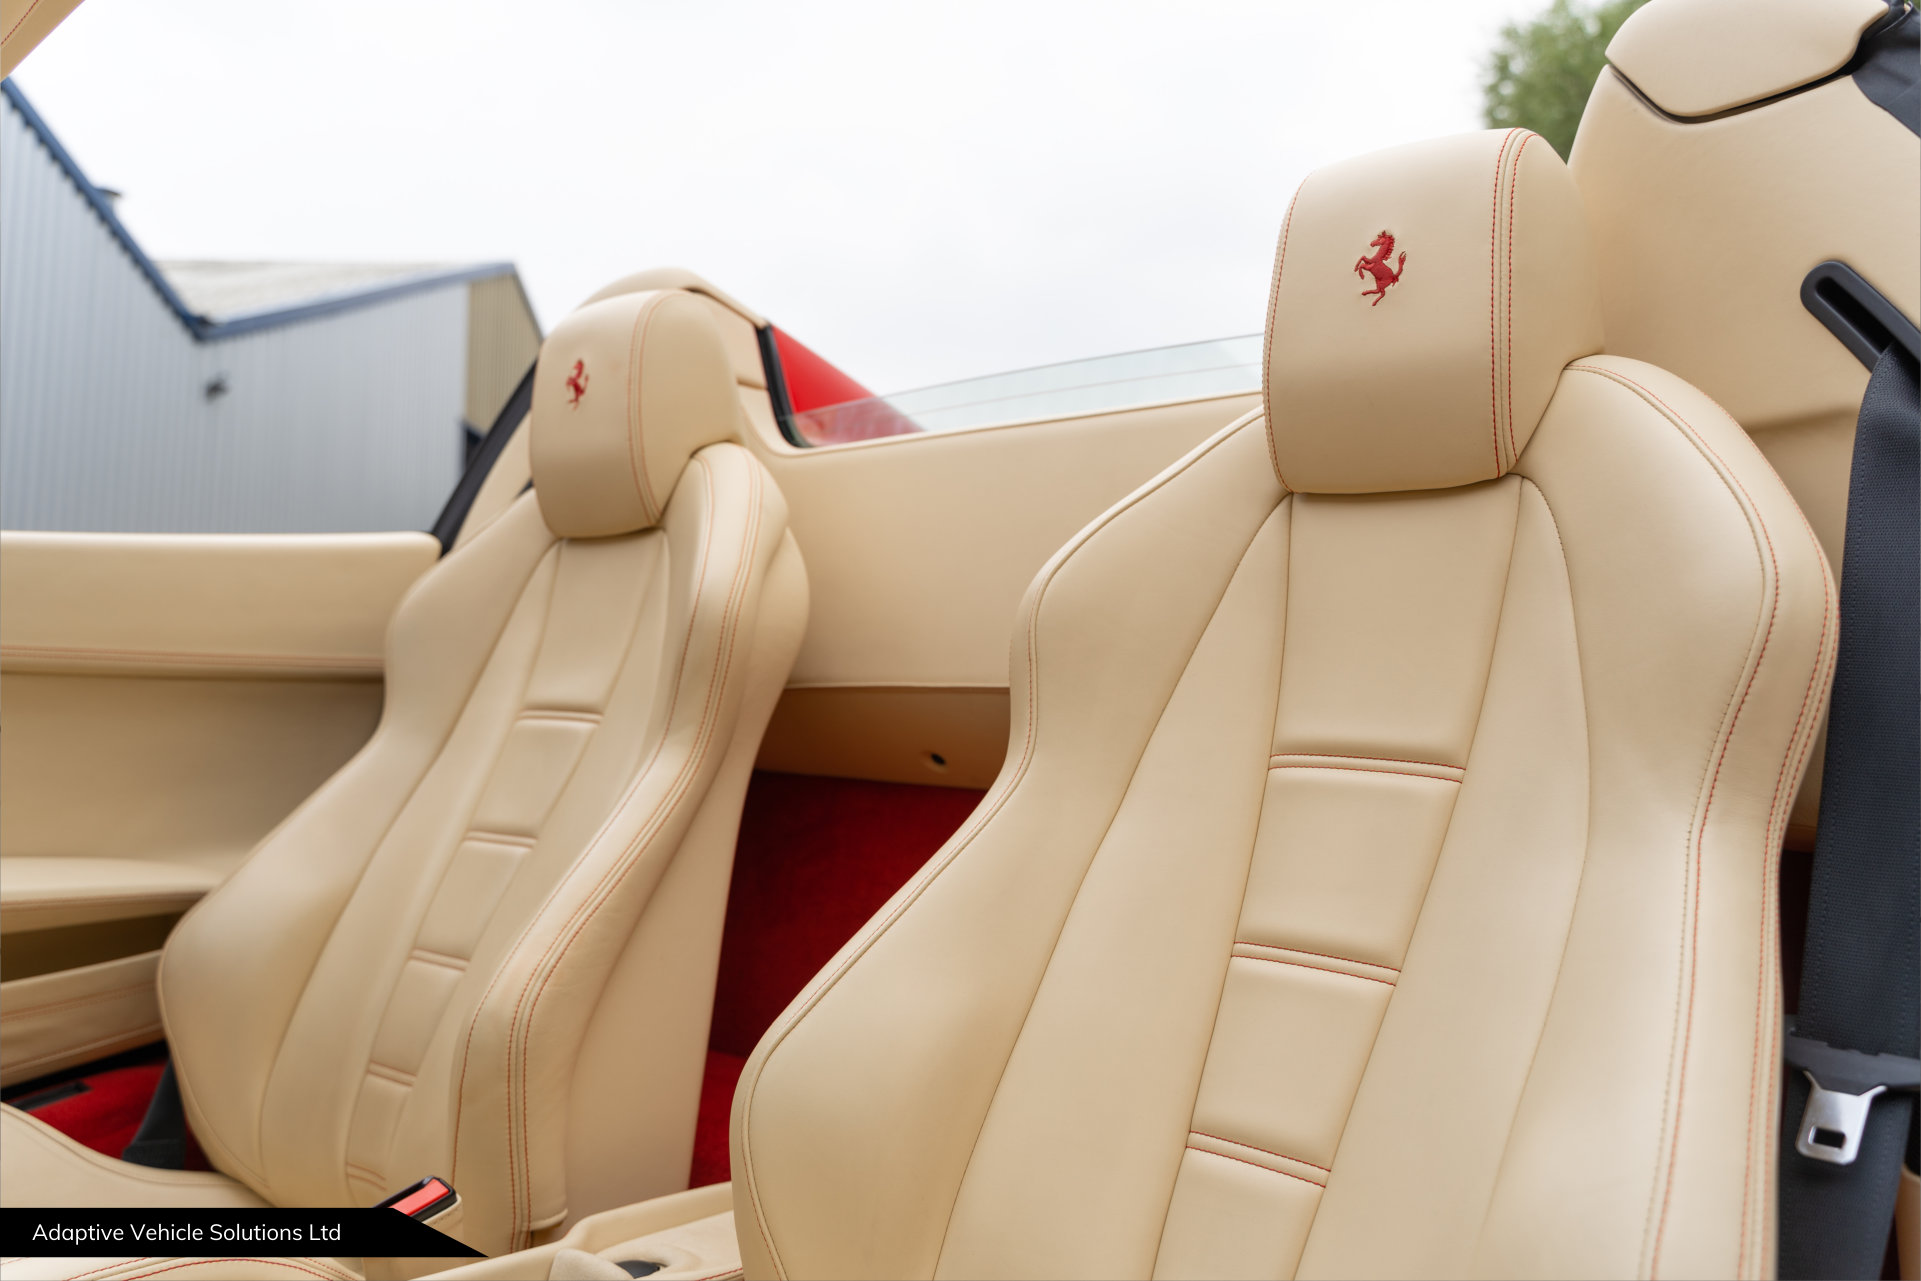 2014 Ferrari 458 Spider seating